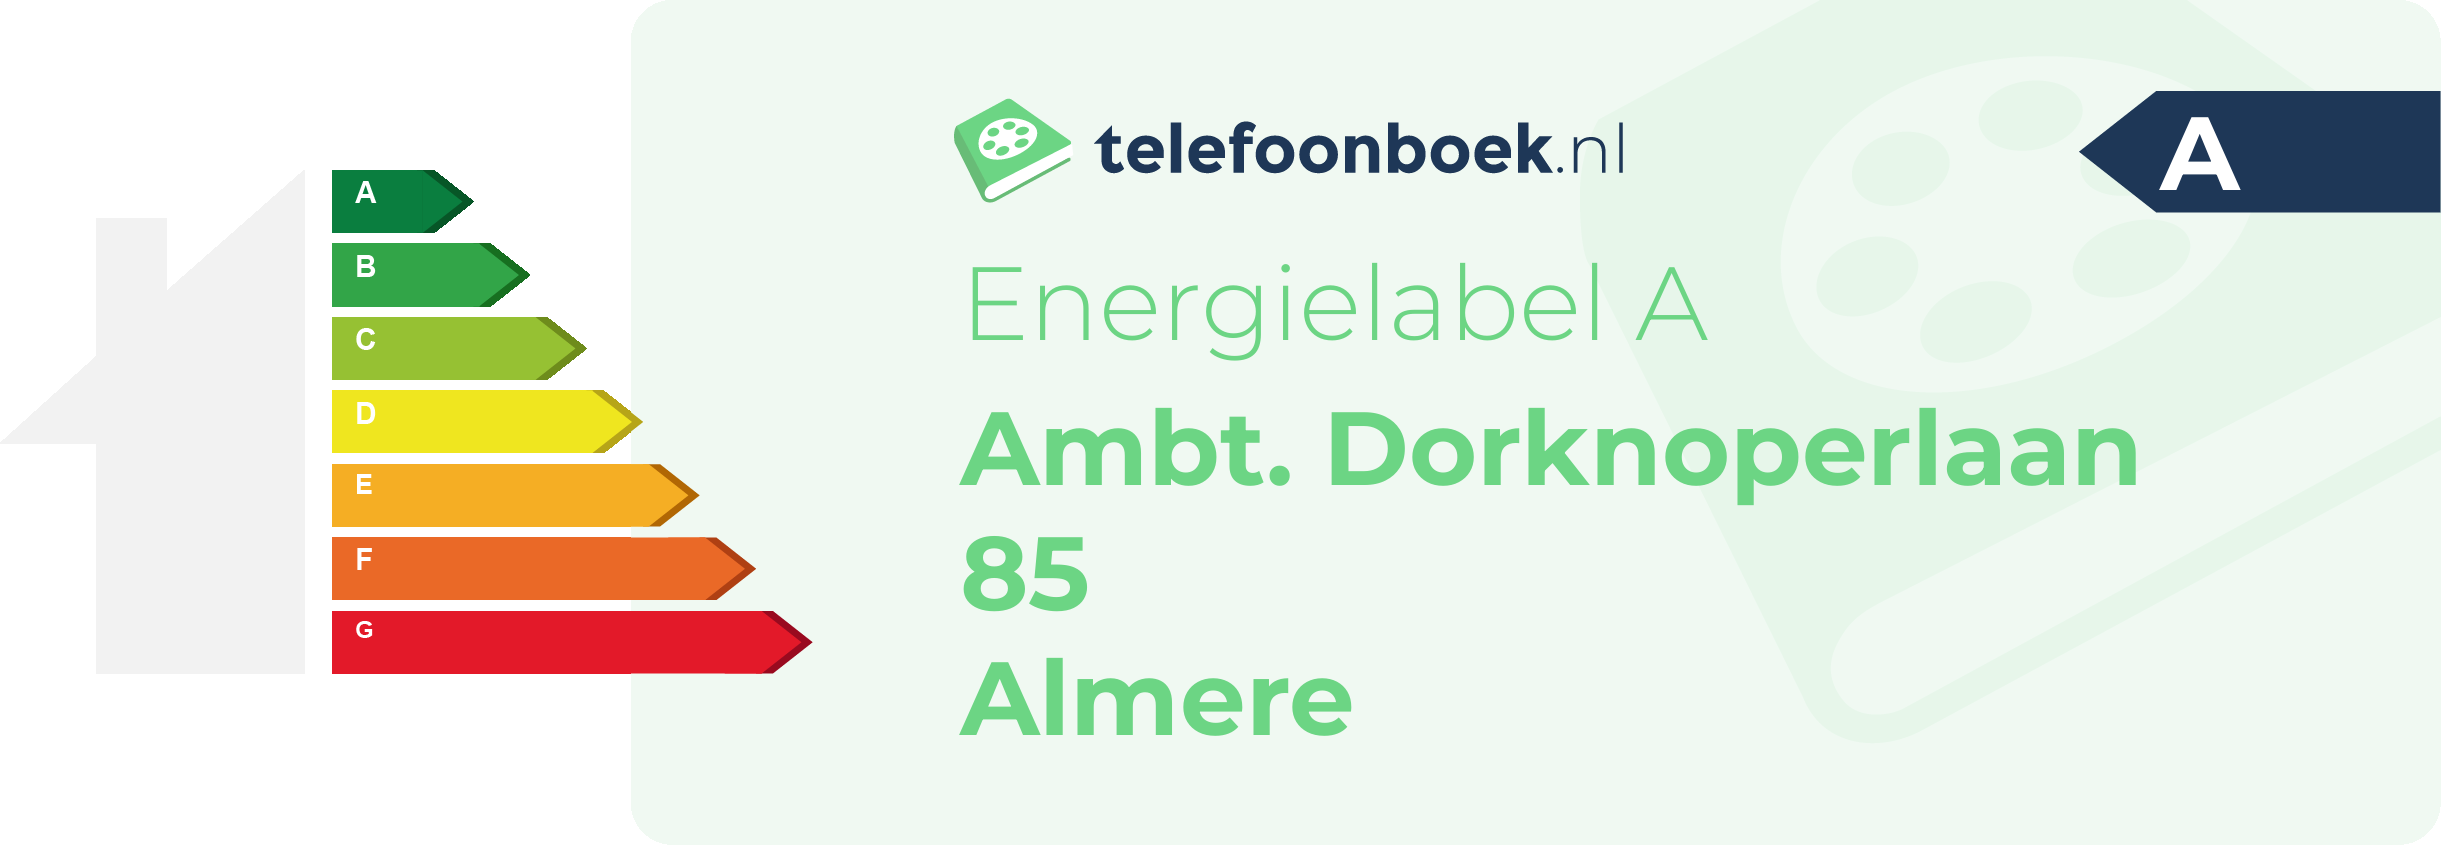 Energielabel Ambt. Dorknoperlaan 85 Almere